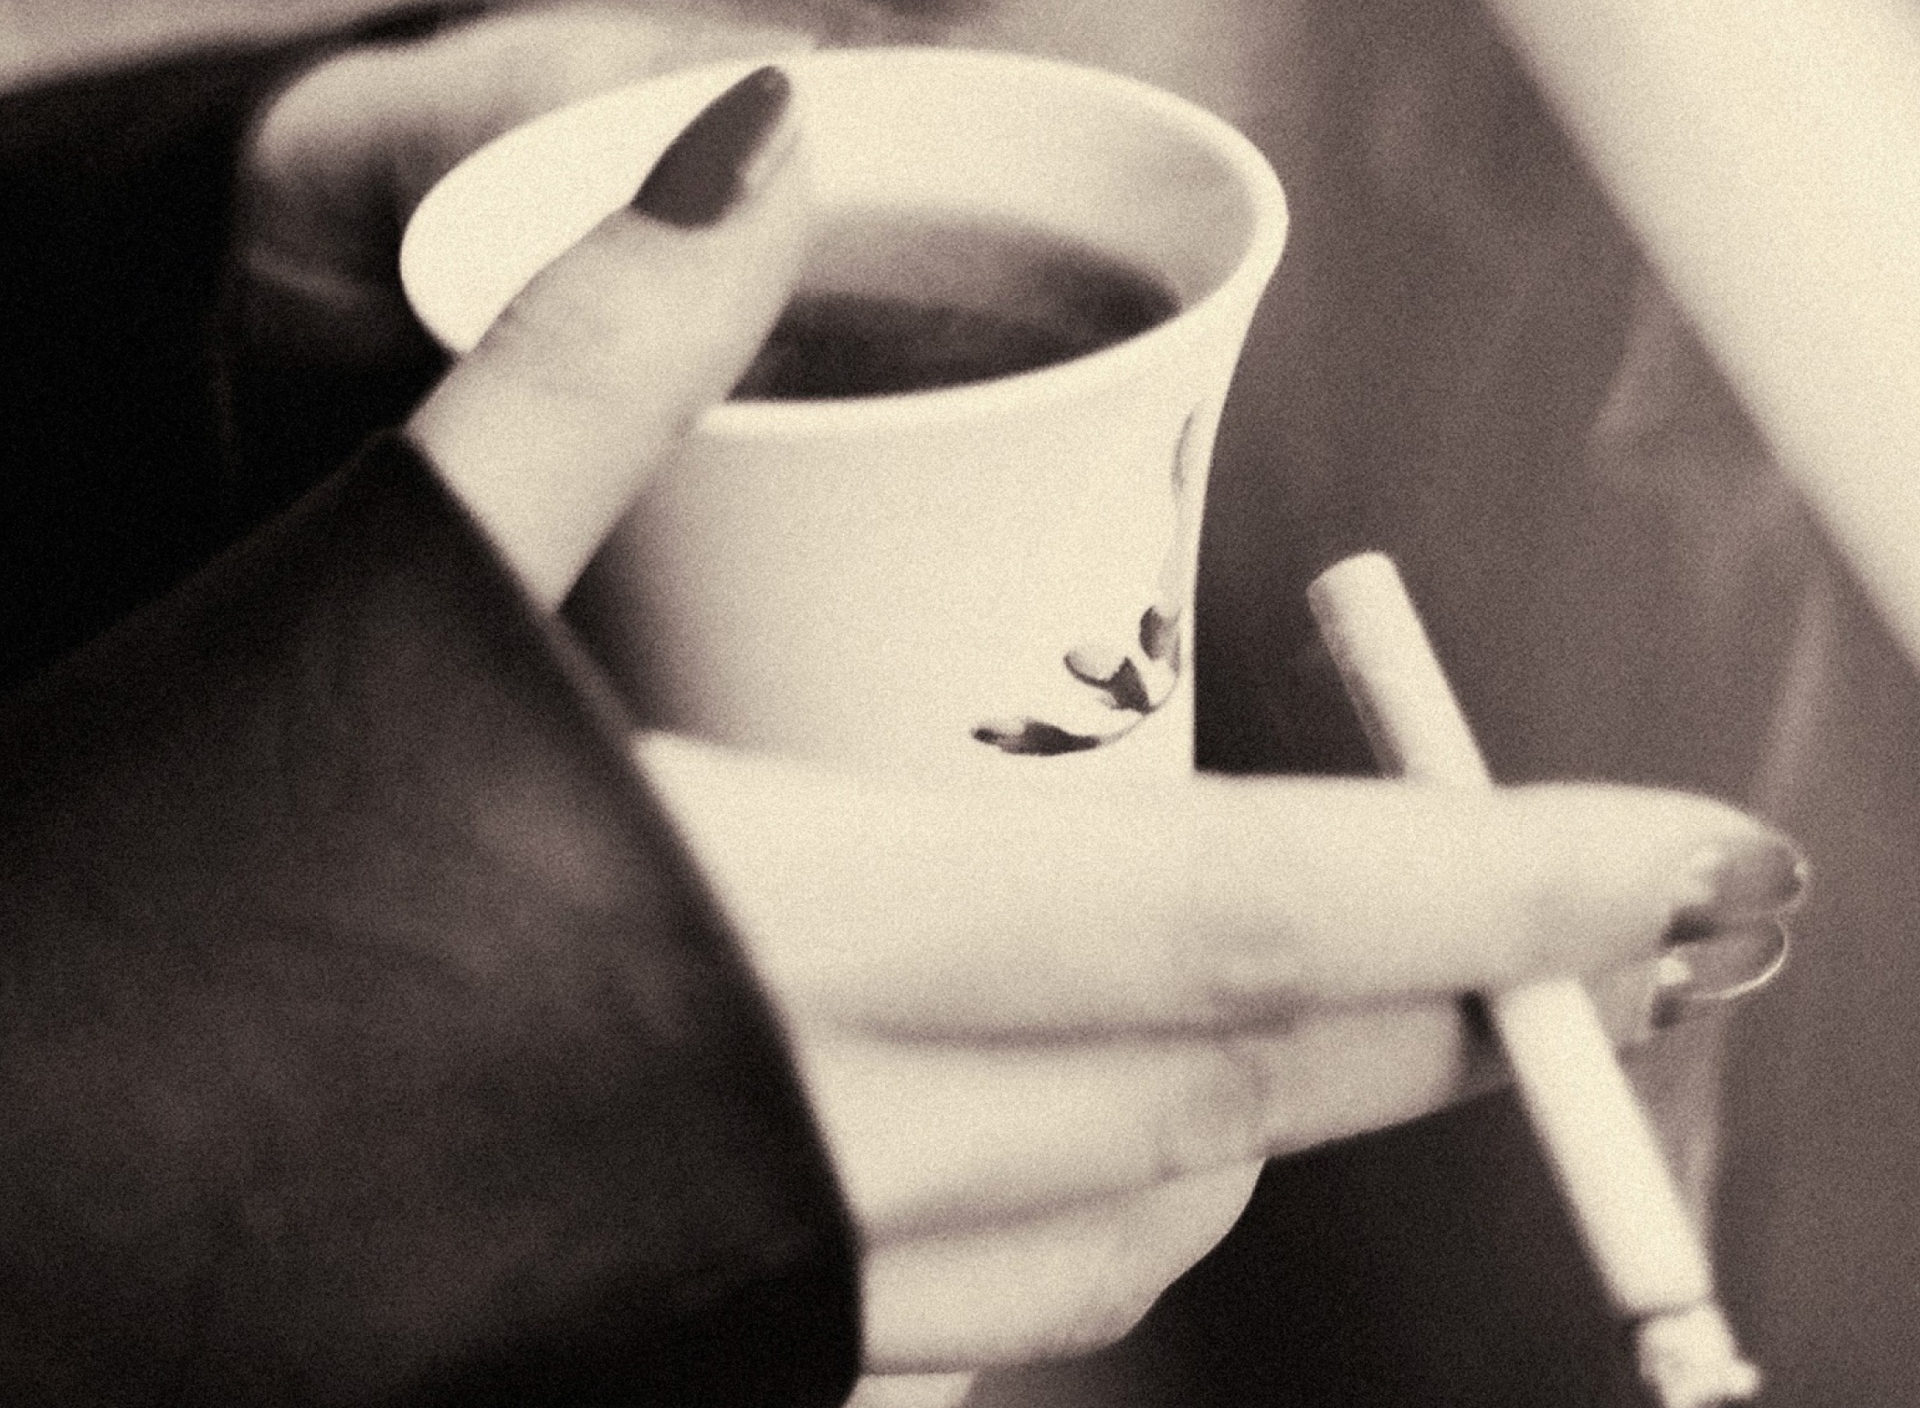 Das Hot Coffee In Her Hands Wallpaper 1920x1408